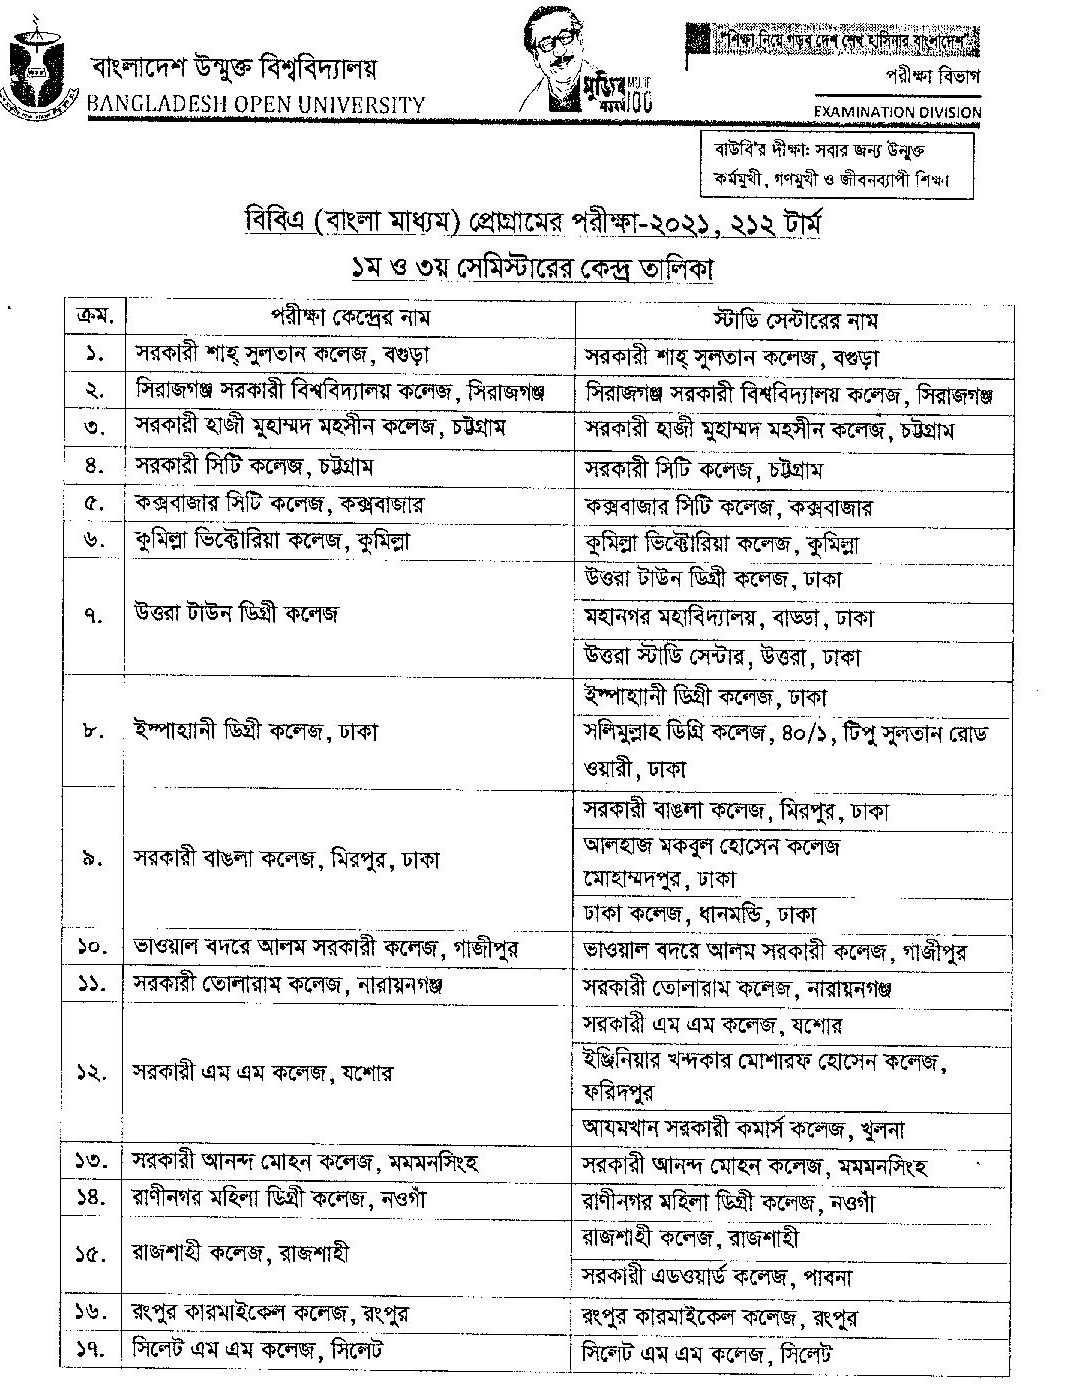 BOU BBA (Bangla Media) Exam Center List 2022 1